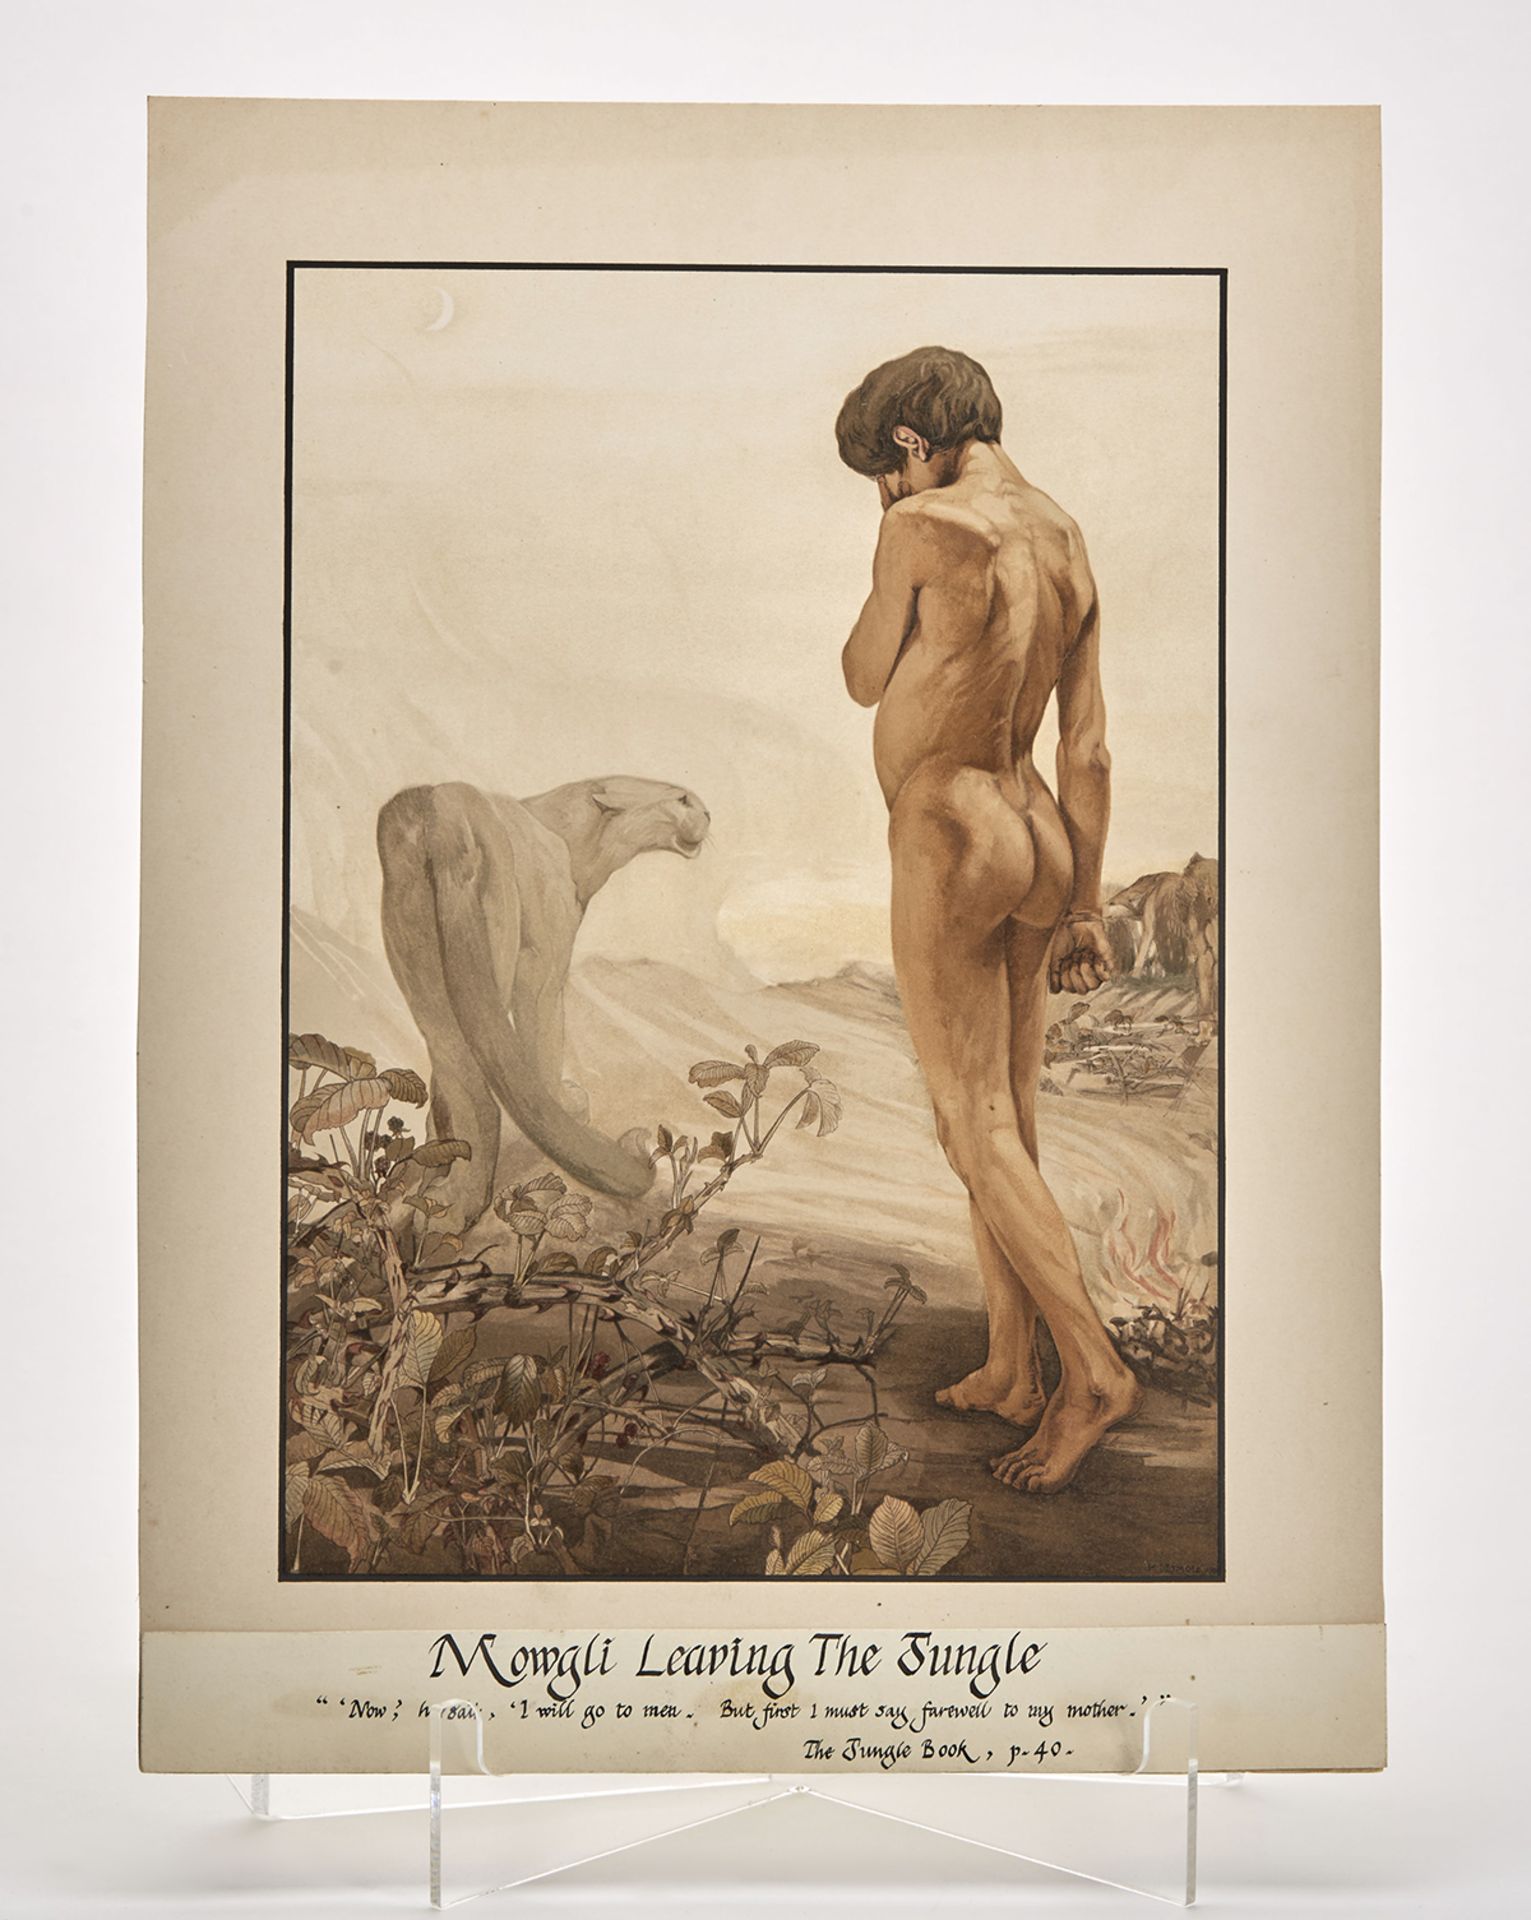 KIPLING'S JUNGLE BOOK MOCK-UP DETMOLD ILLUSTRATIONS 1903 - Image 13 of 15